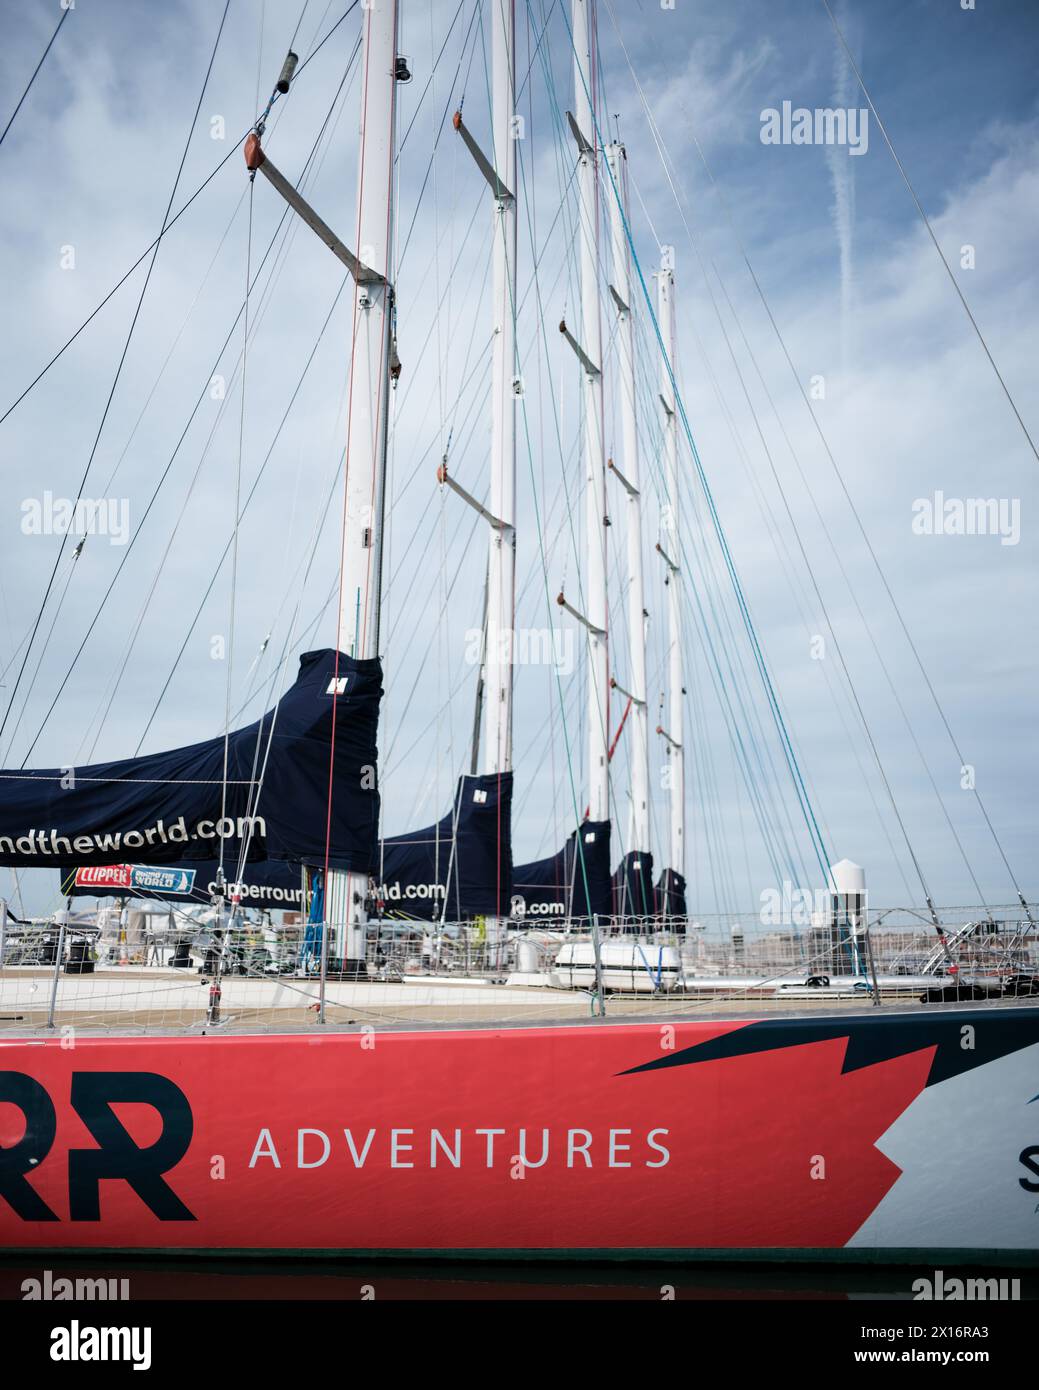 Bateaux d'entraînement pour la Clipper Round the World Yacht Race amarrés à Gosport, Portsmouth, Royaume-Uni Banque D'Images